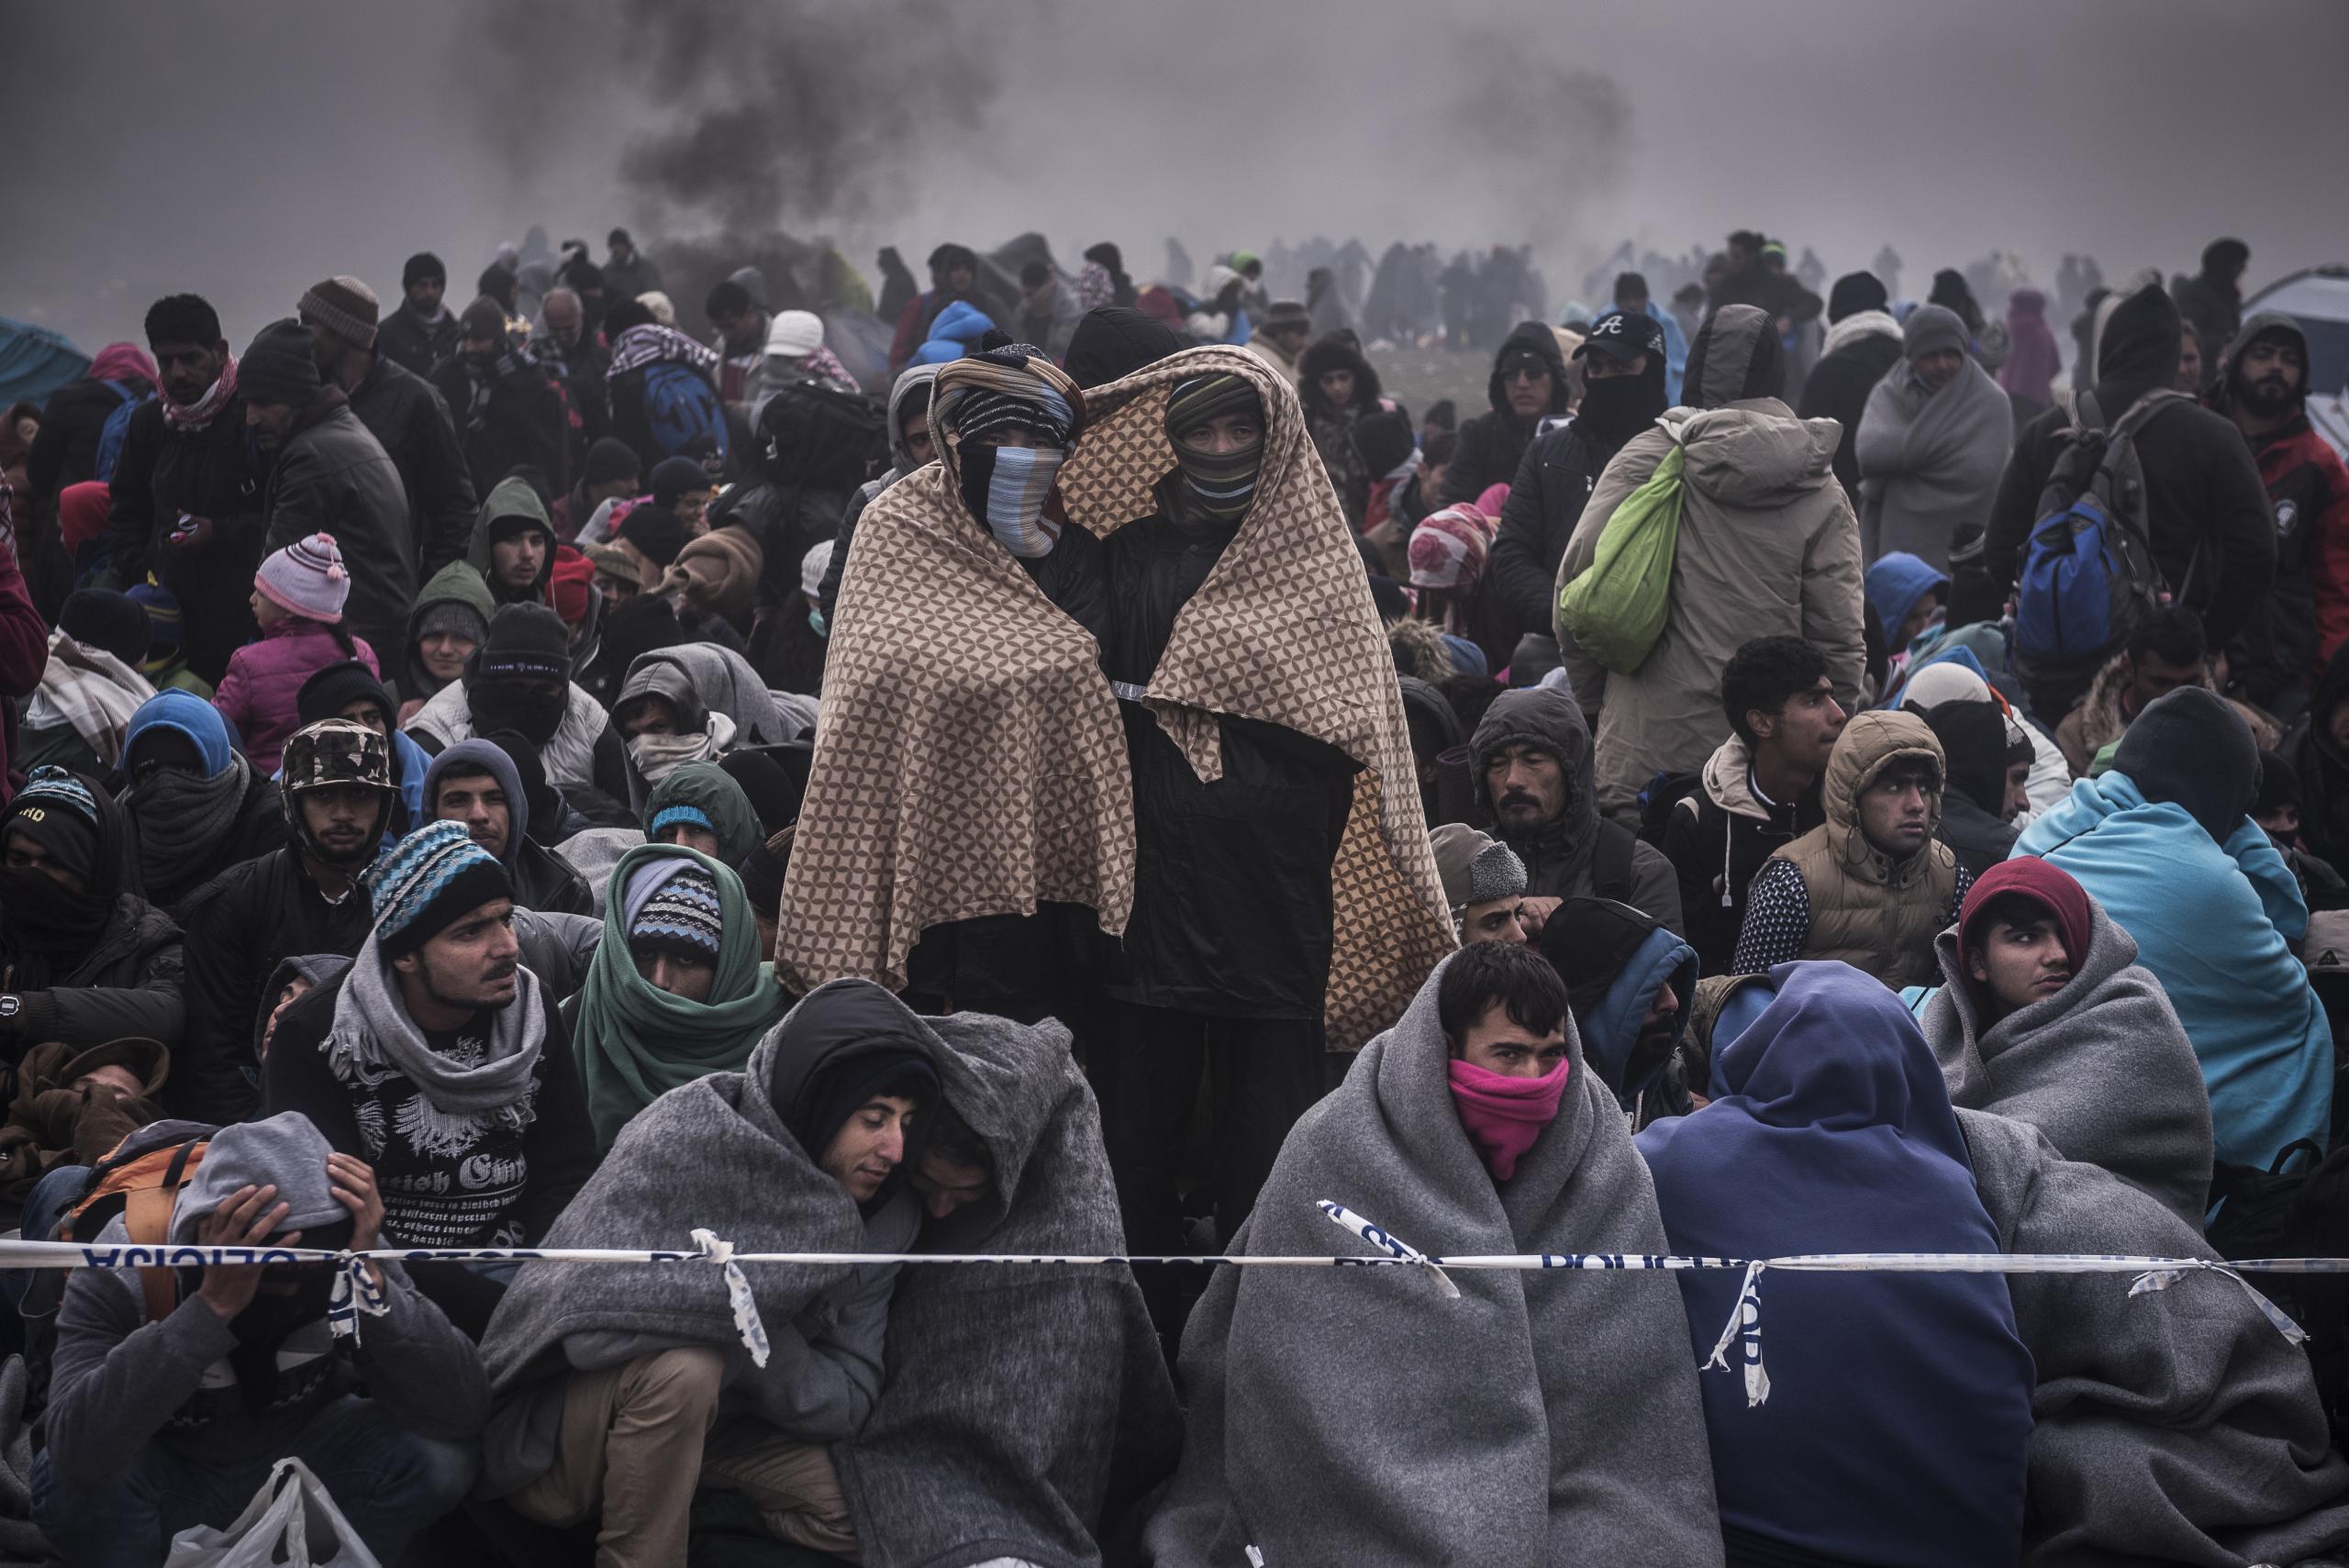 随后的4年里,每年都是几十到上百万的难民偷渡欧洲